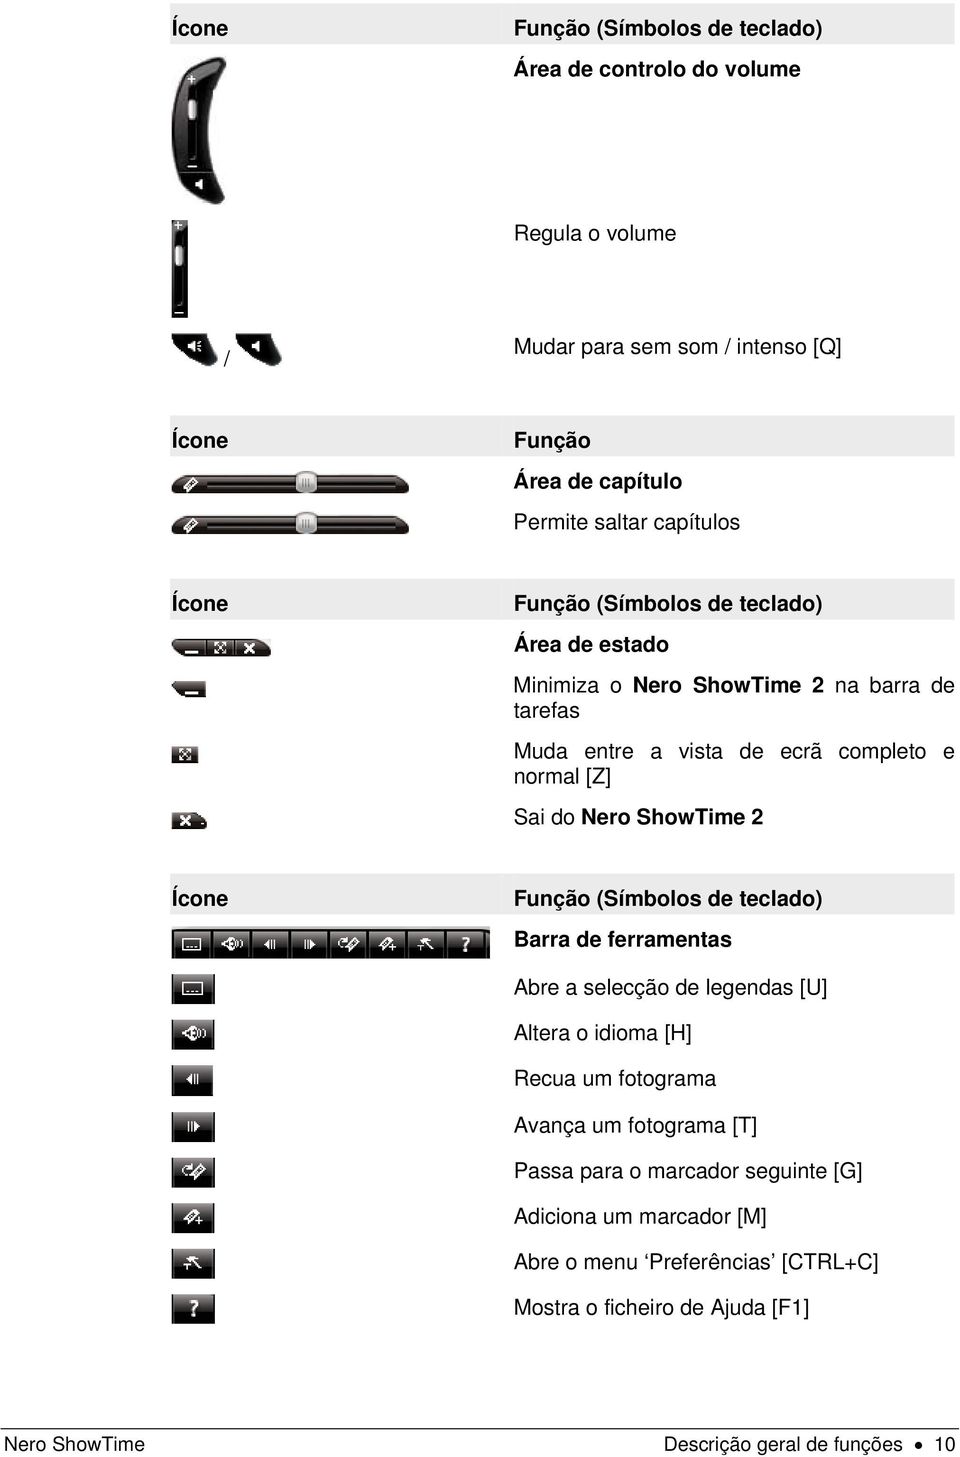 Nero ShowTime 2 Ícone Função (Símbolos de teclado) Barra de ferramentas Abre a selecção de legendas [U] Altera o idioma [H] Recua um fotograma Avança um fotograma